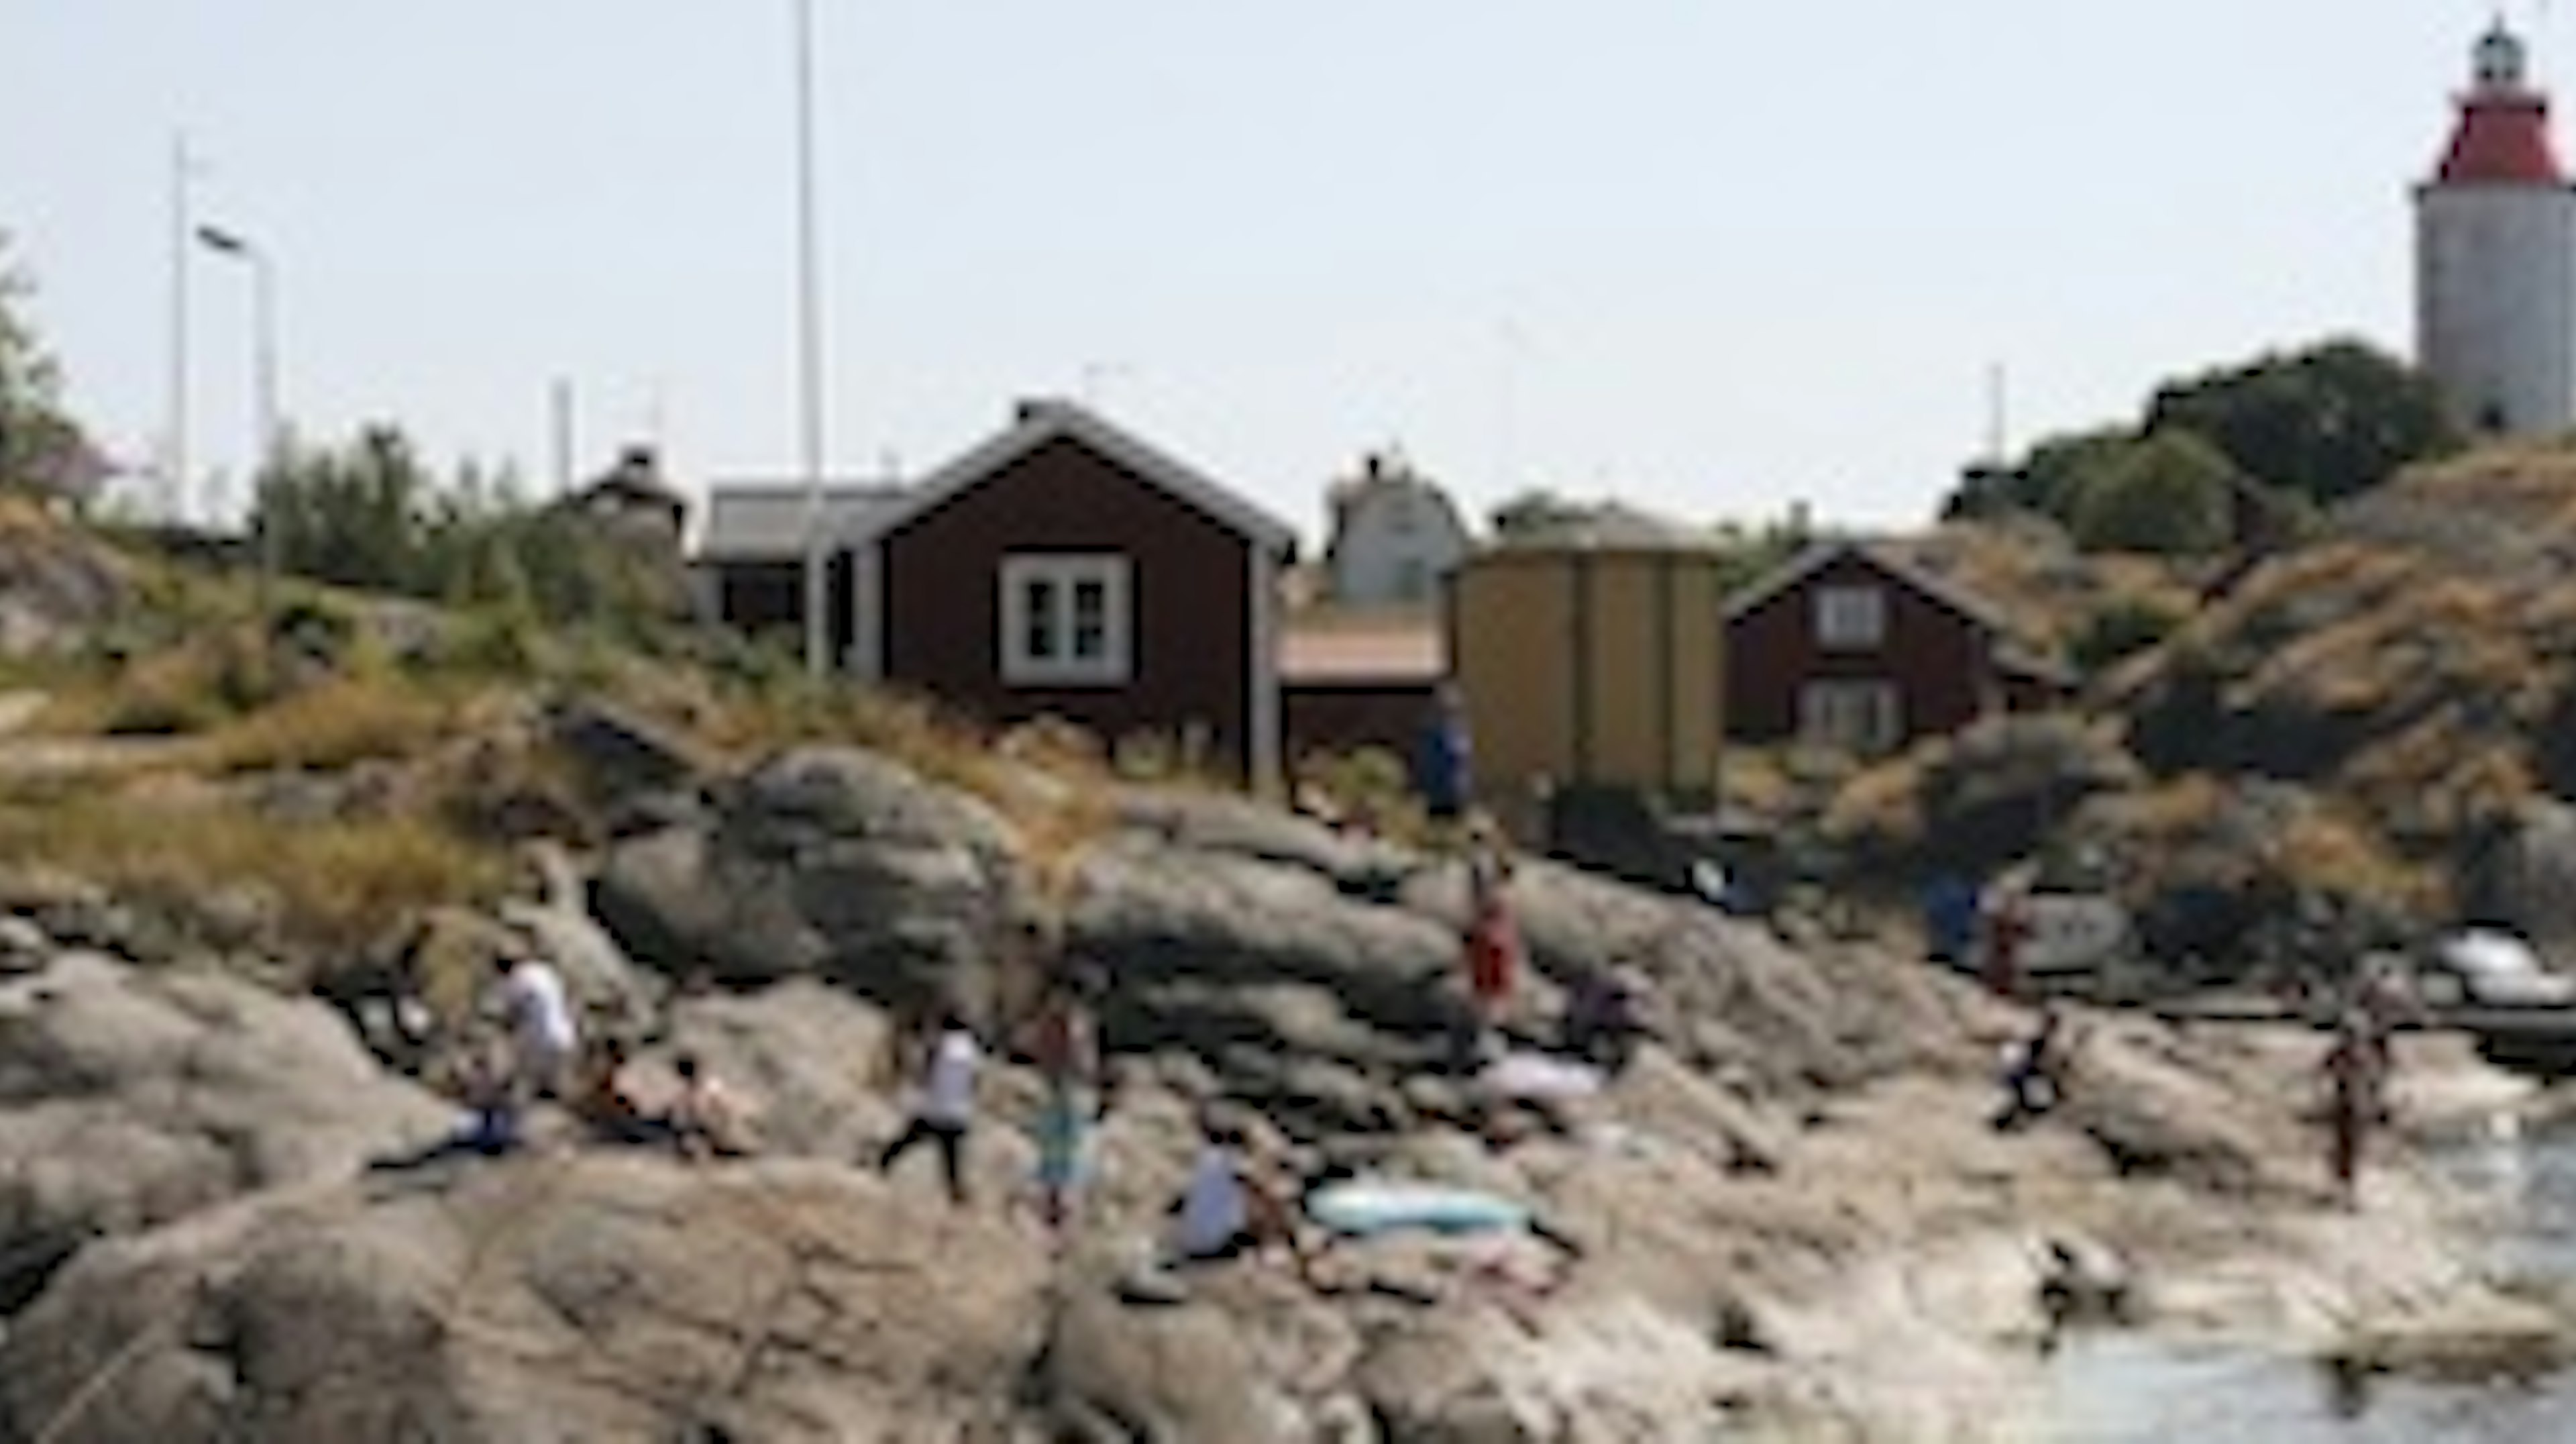 Landsort med Sveriges äldsta fyr renoveras.